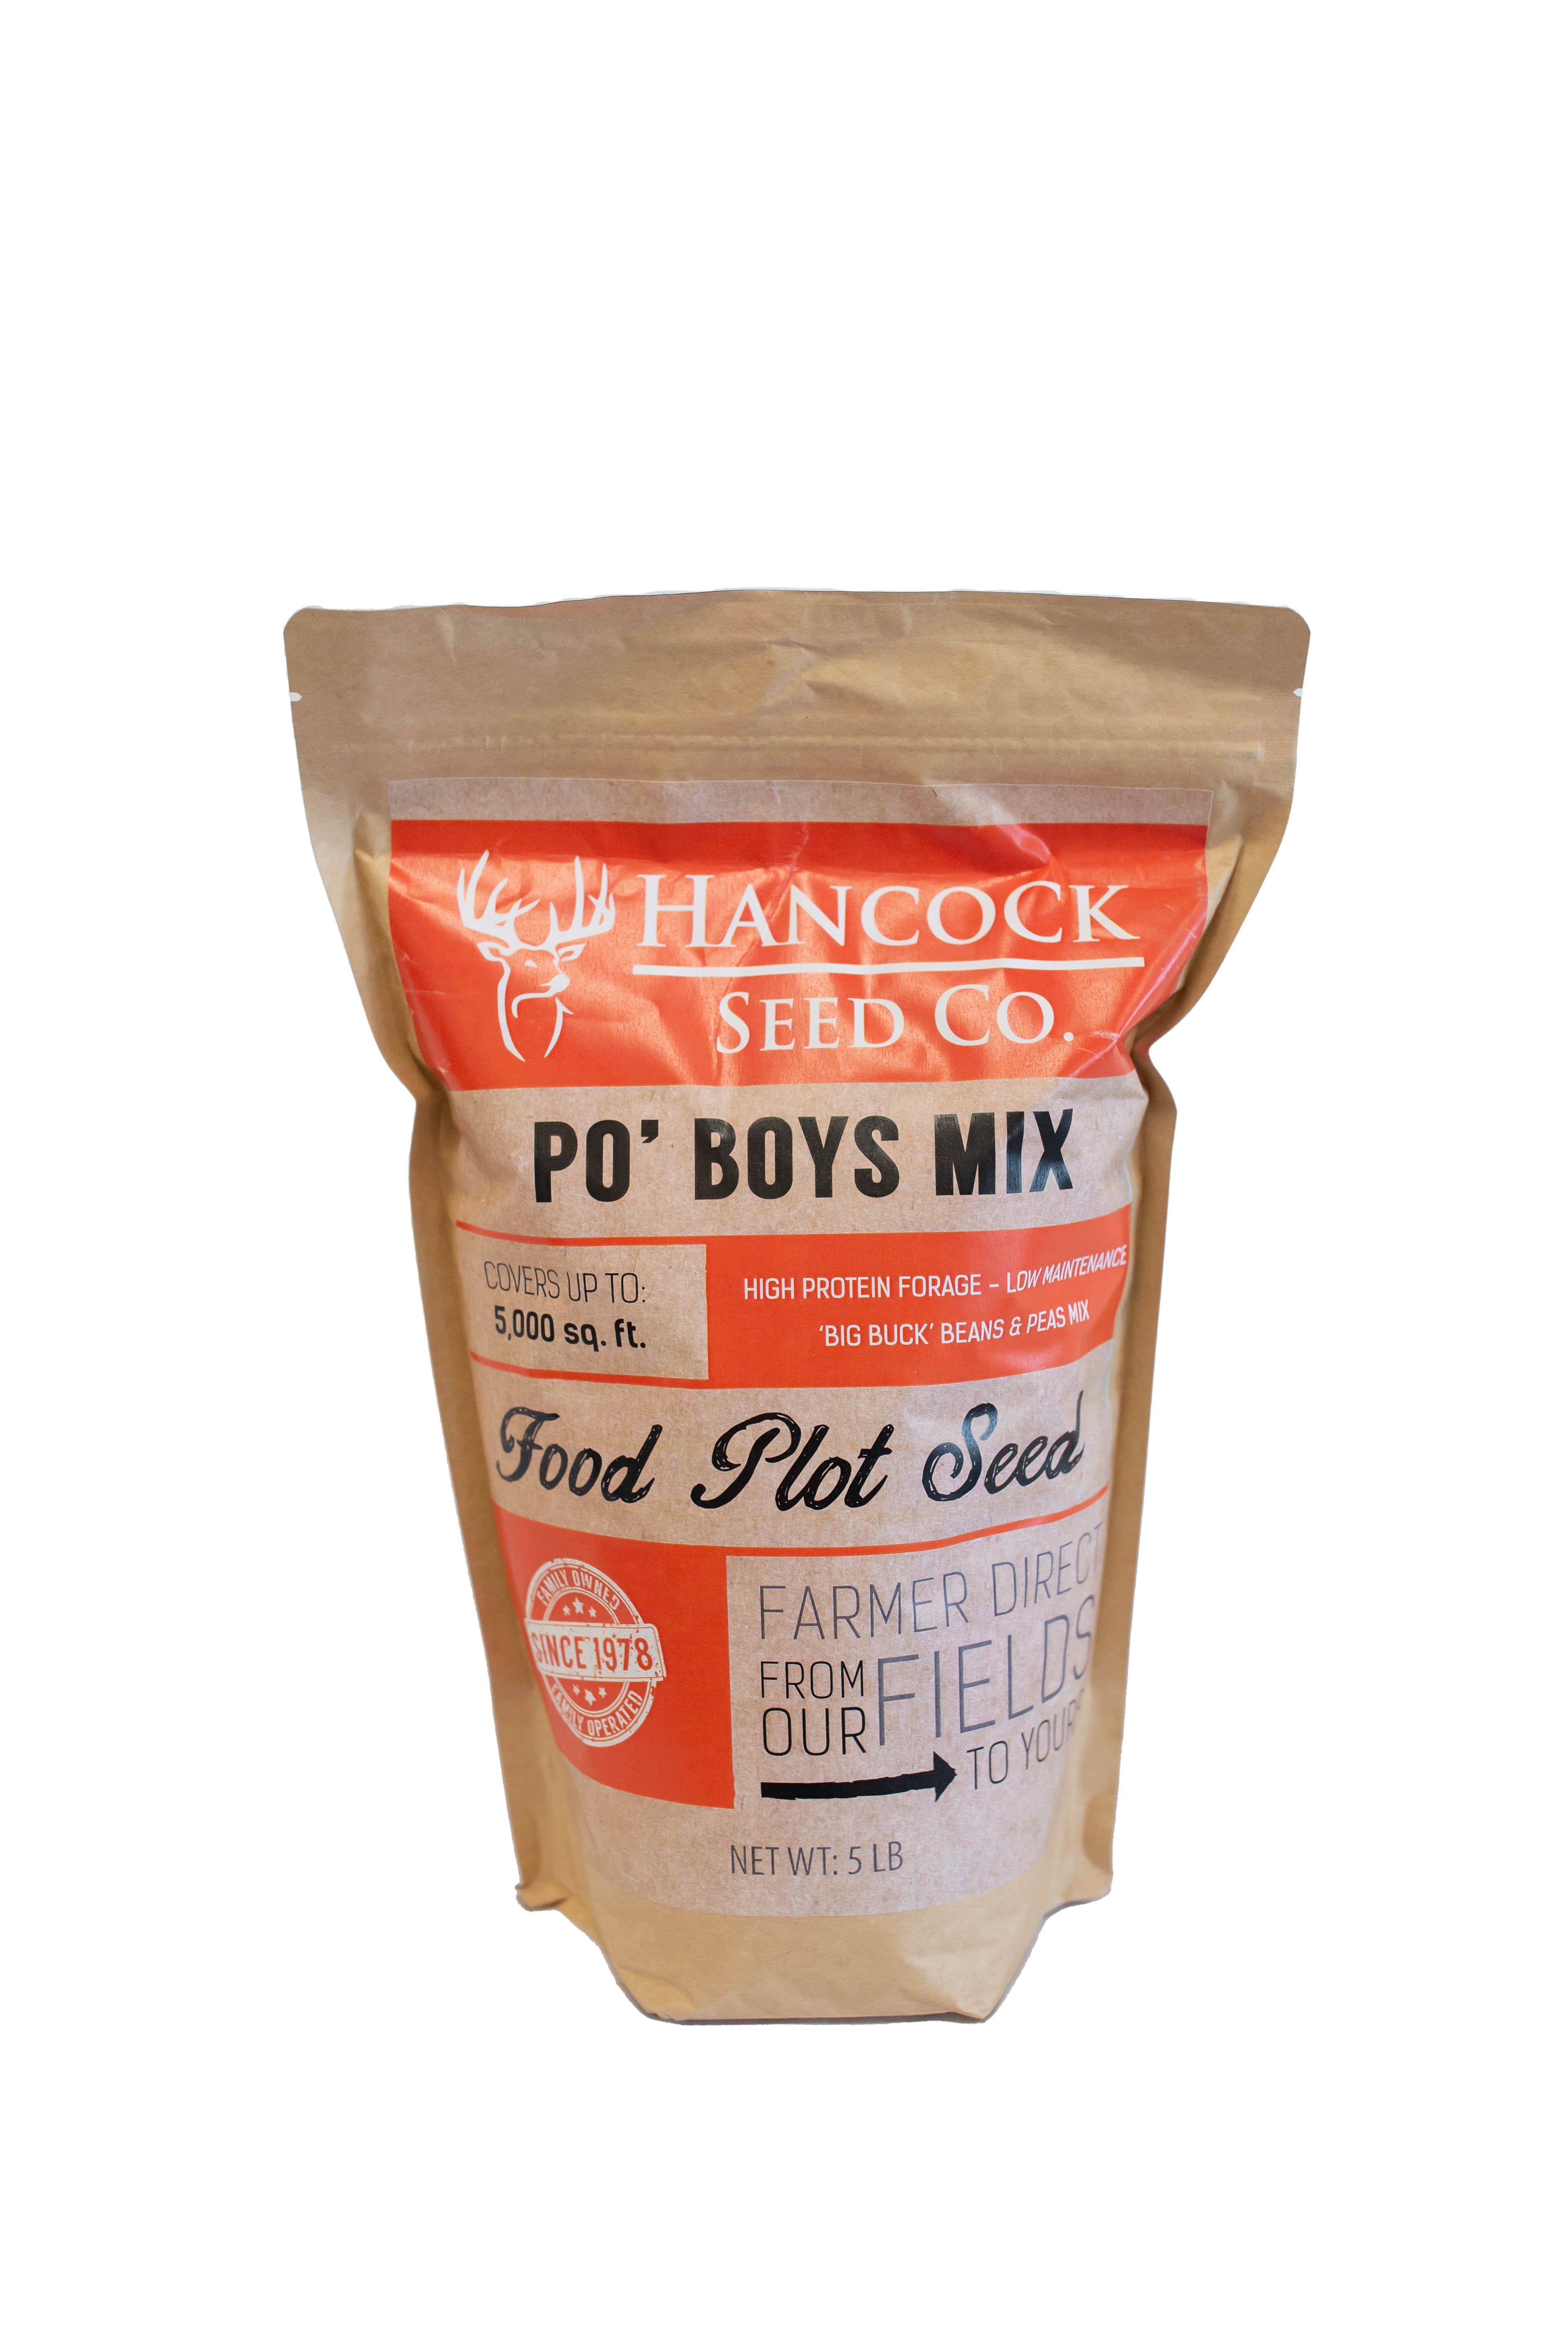 Hancock's Po' Boys Spring & Summer Mix, 5 lb. Bag